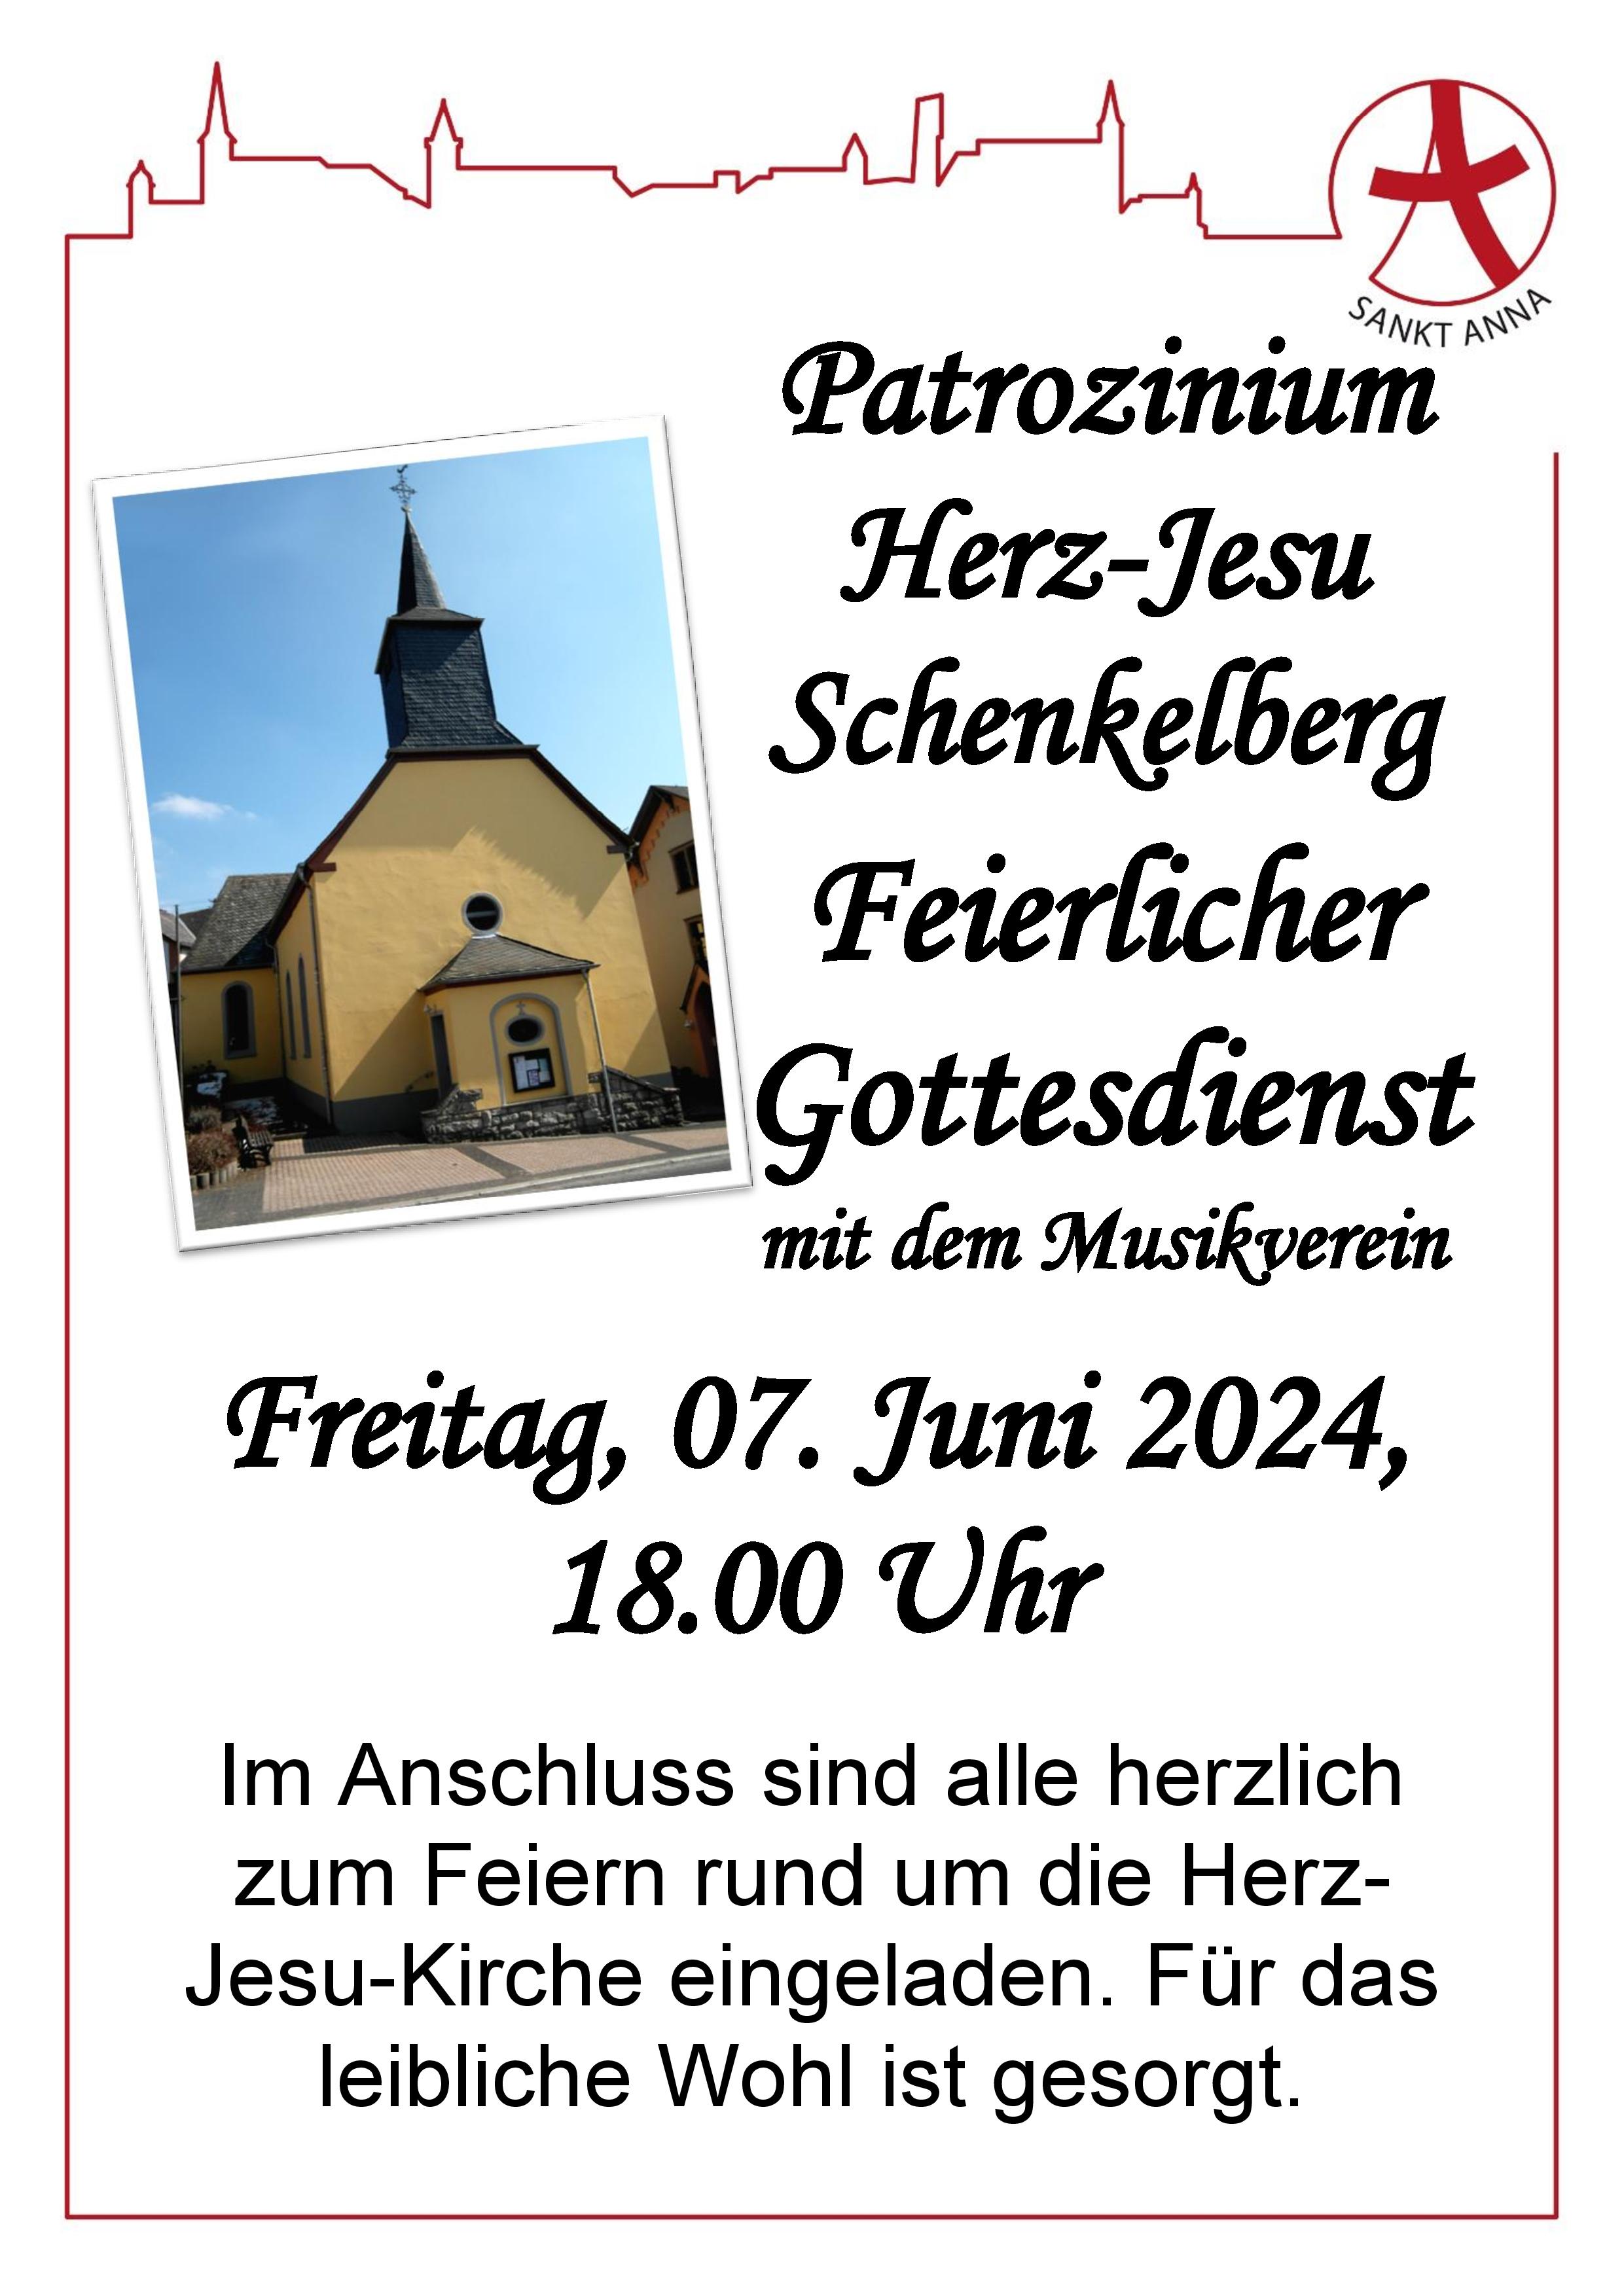 Am 07. Juni 2024 feiern wir um 18.00 Uhr eine Heilige Messe mit dem Musikverein Schenkelberg anlässlich des Patronatsfest in Herz-Jesu. Anschließend sind alle zum Feiern rund um die Kirche eingeladen. Für das leibliche Wohl ist gesorgt.